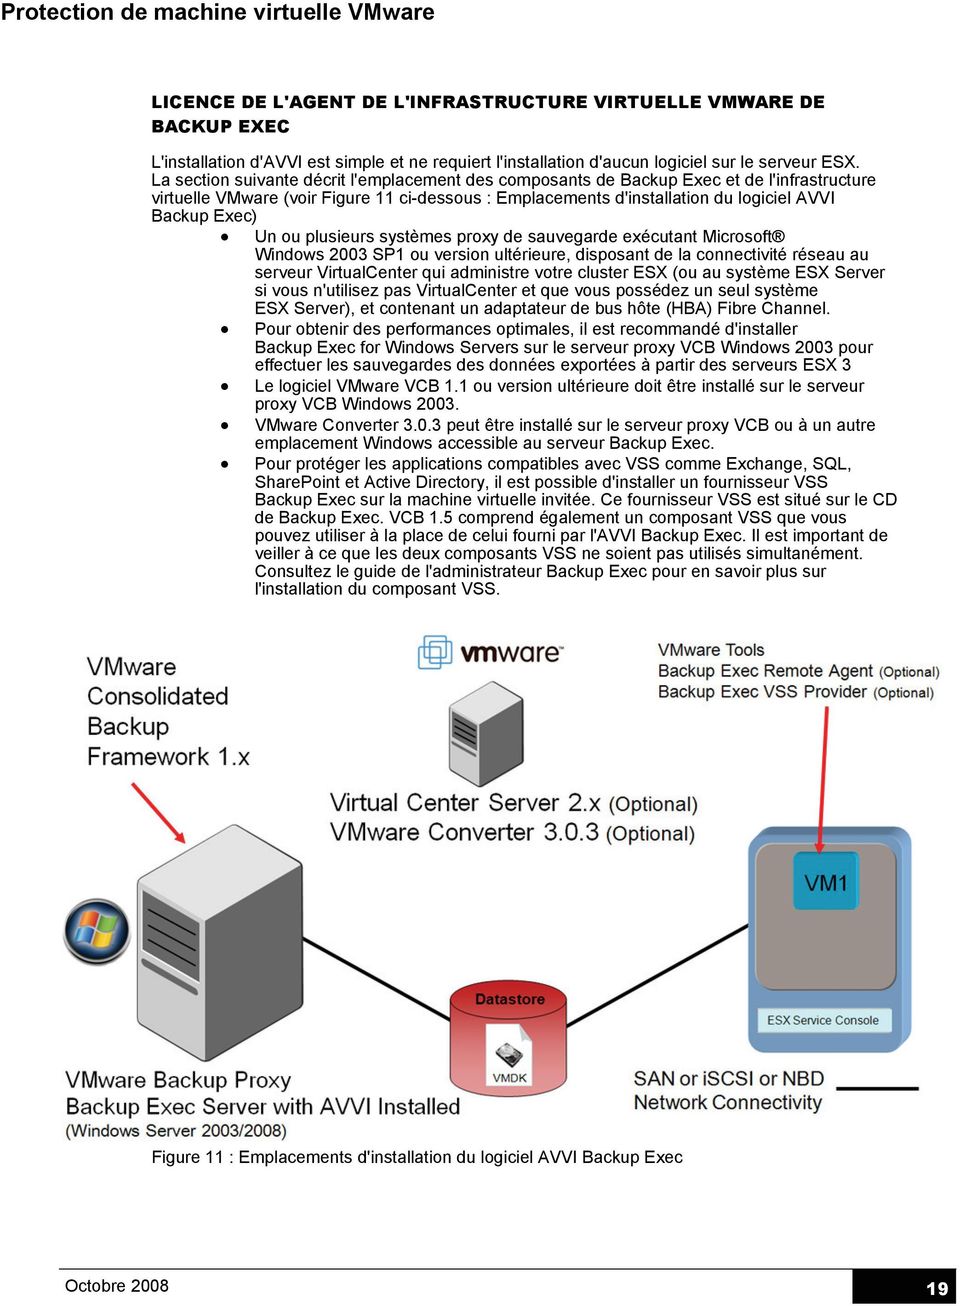 Un ou plusieurs systèmes proxy de sauvegarde exécutant Microsoft Windows 2003 SP1 ou version ultérieure, disposant de la connectivité réseau au serveur VirtualCenter qui administre votre cluster ESX